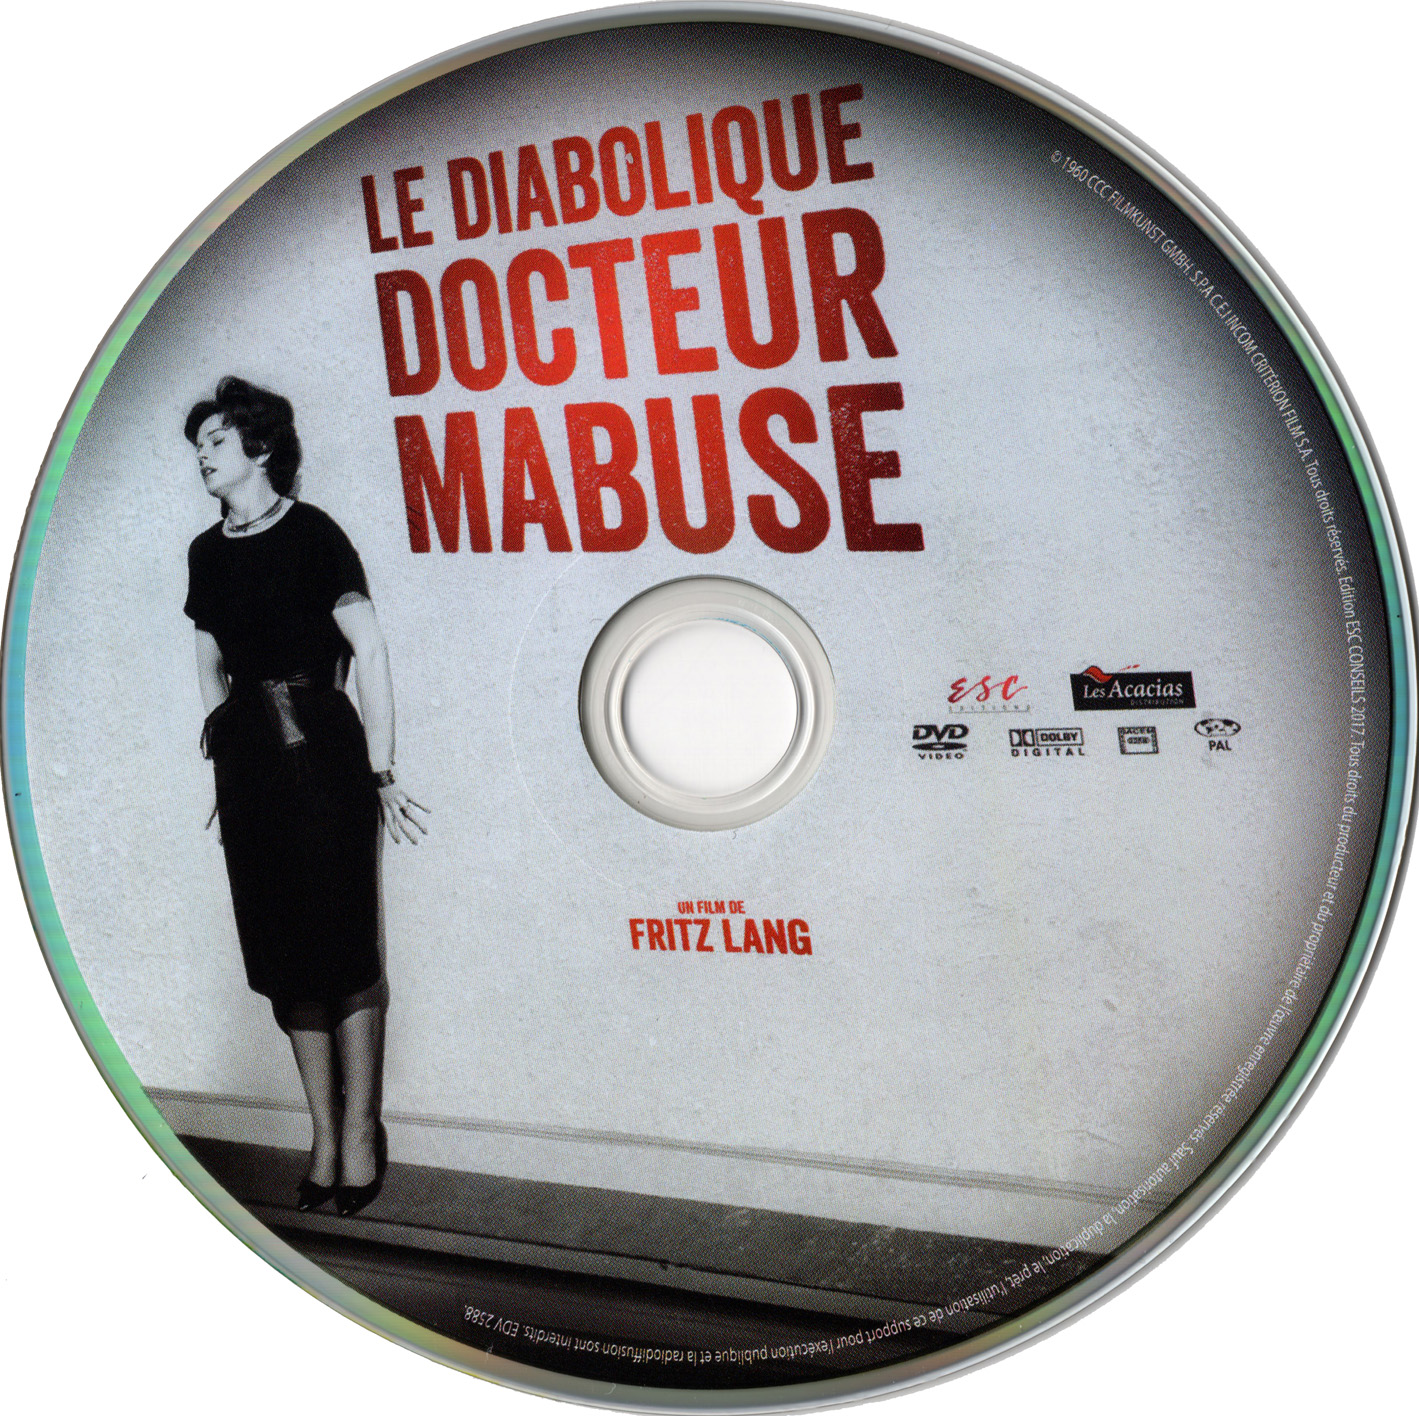 Le diabolique docteur Mabuse